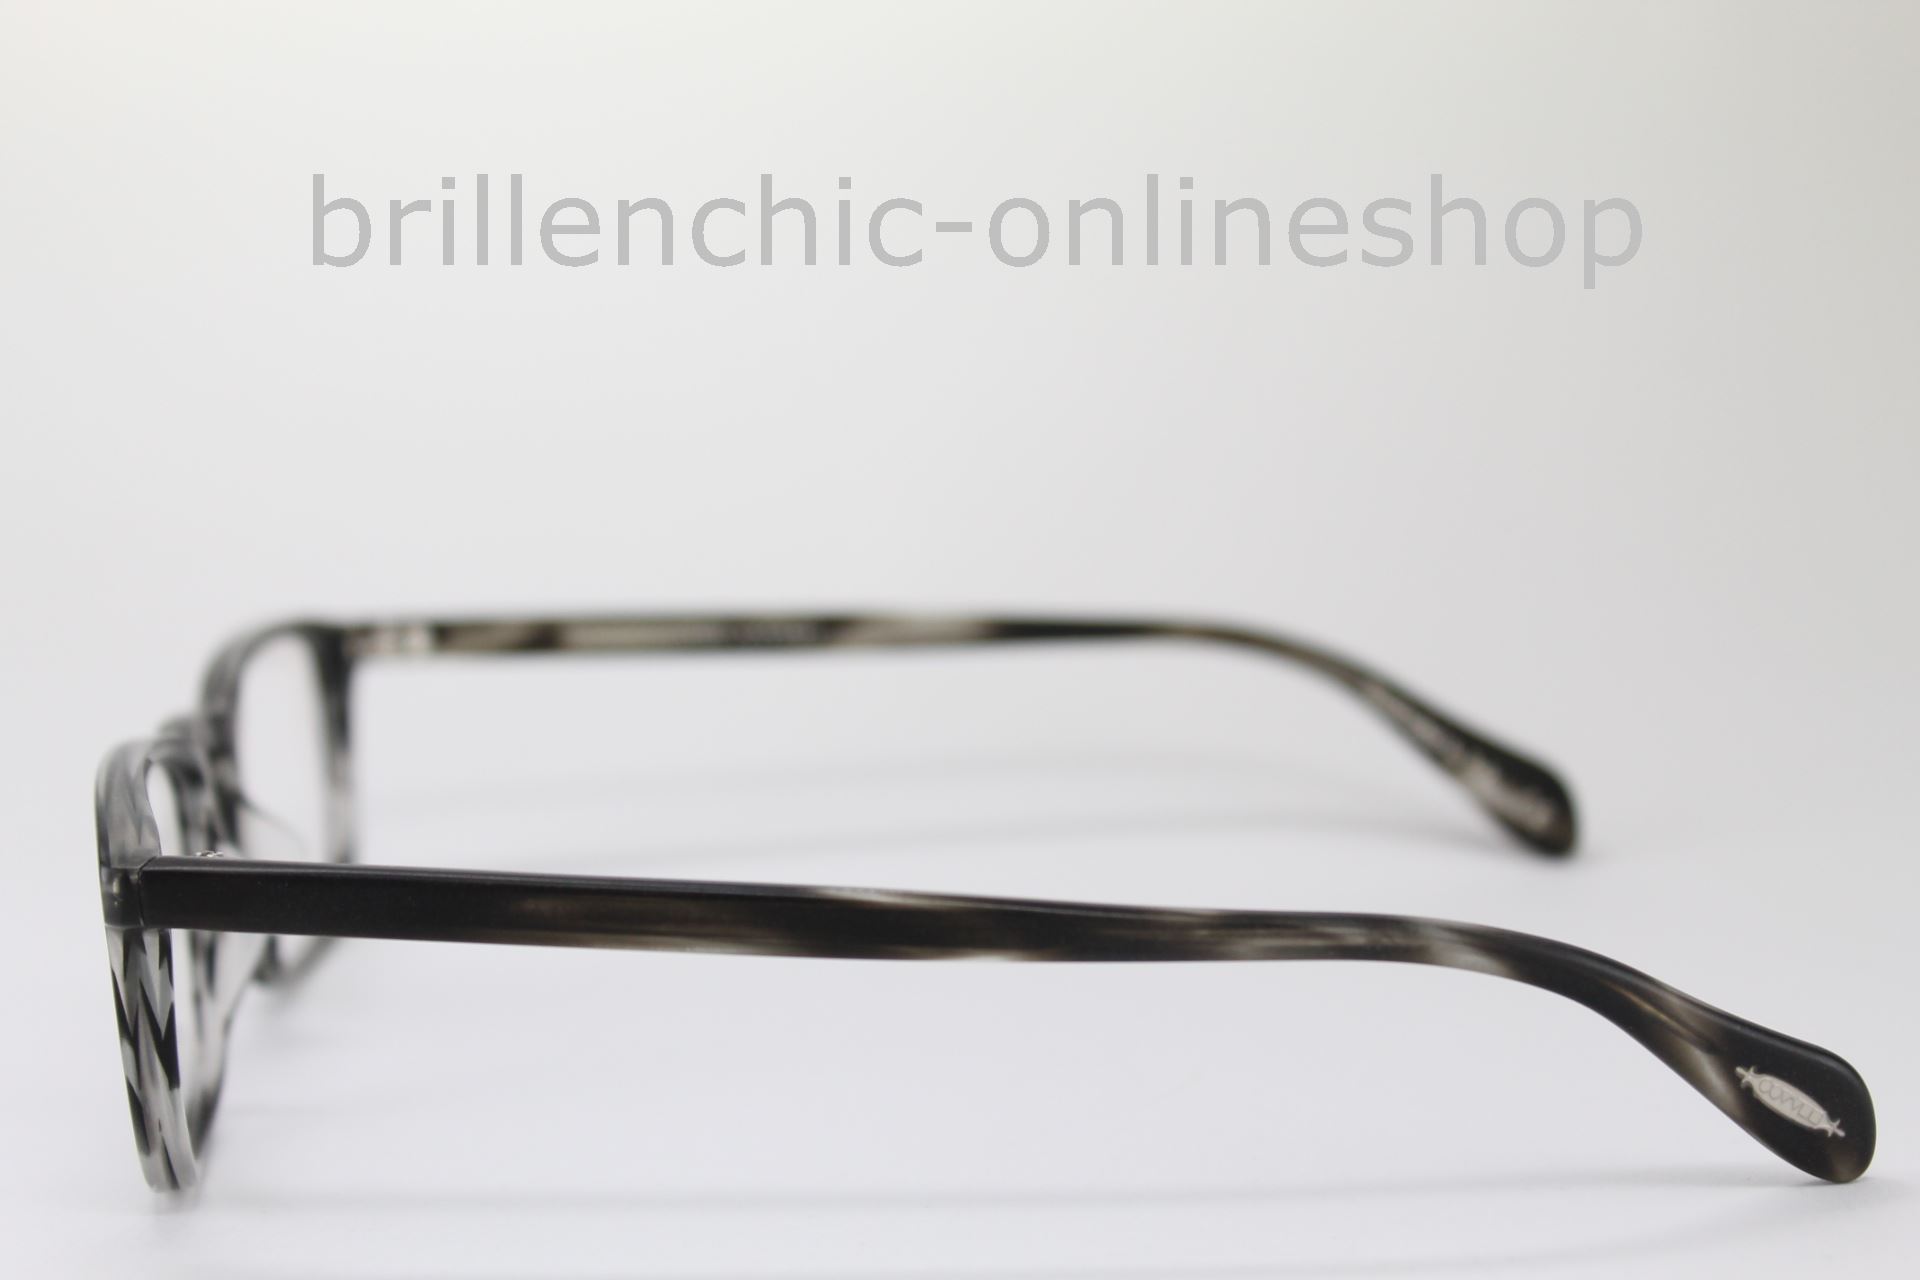 Brillenchic - onlineshop Berlin Ihr starker Partner für exklusive Brillen  online kaufen/OLIVER PEOPLES LARRABEE OV 5005 1486 exklusiv im  Brillenchic-Onlineshop